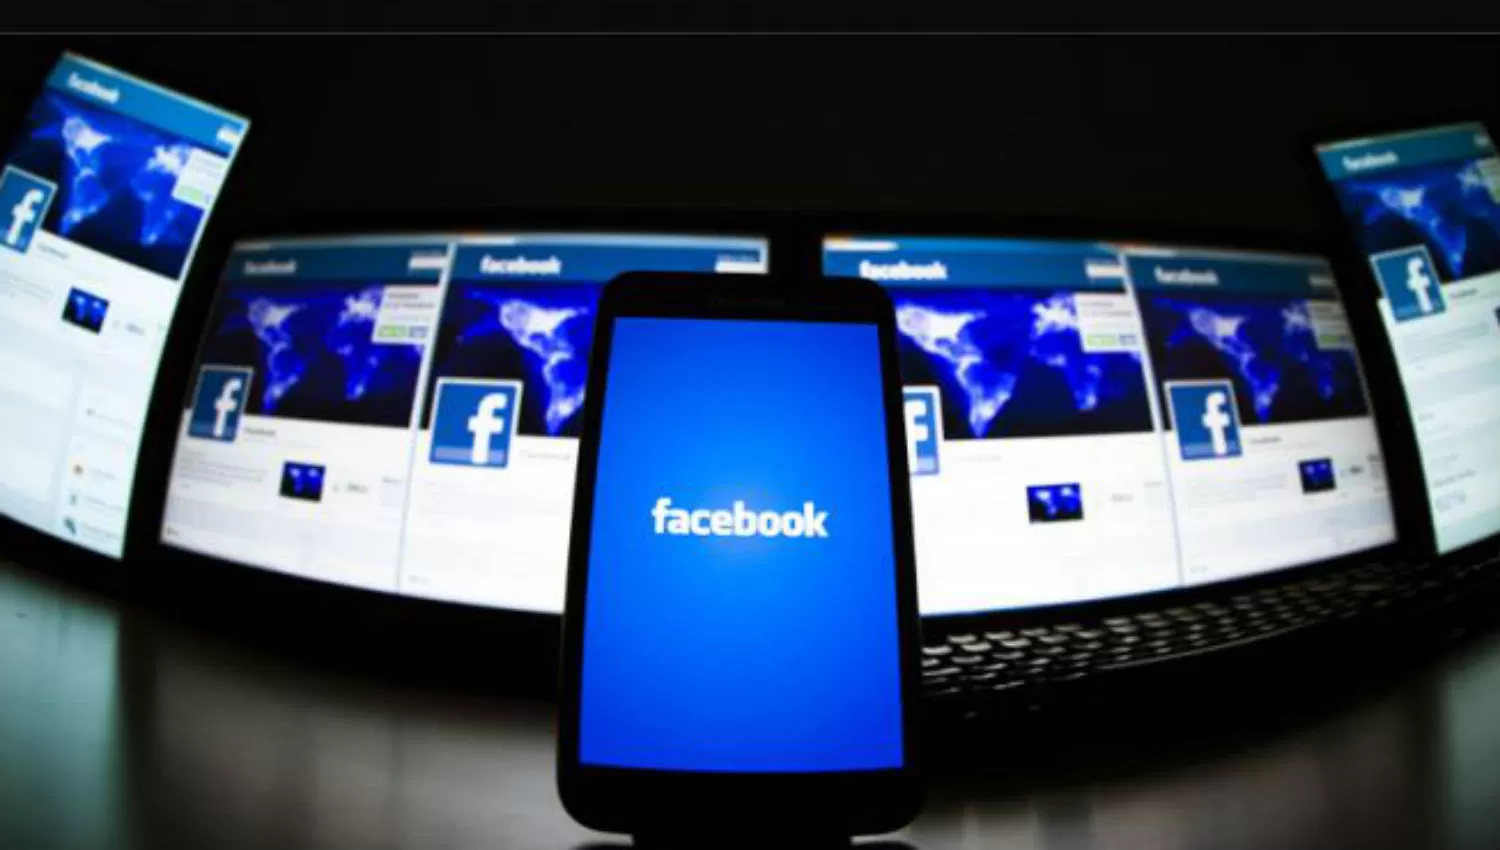 A TIEMPO. Facebook logró una cadena de alertas desde Estados Unidos para evitar la muerte.

